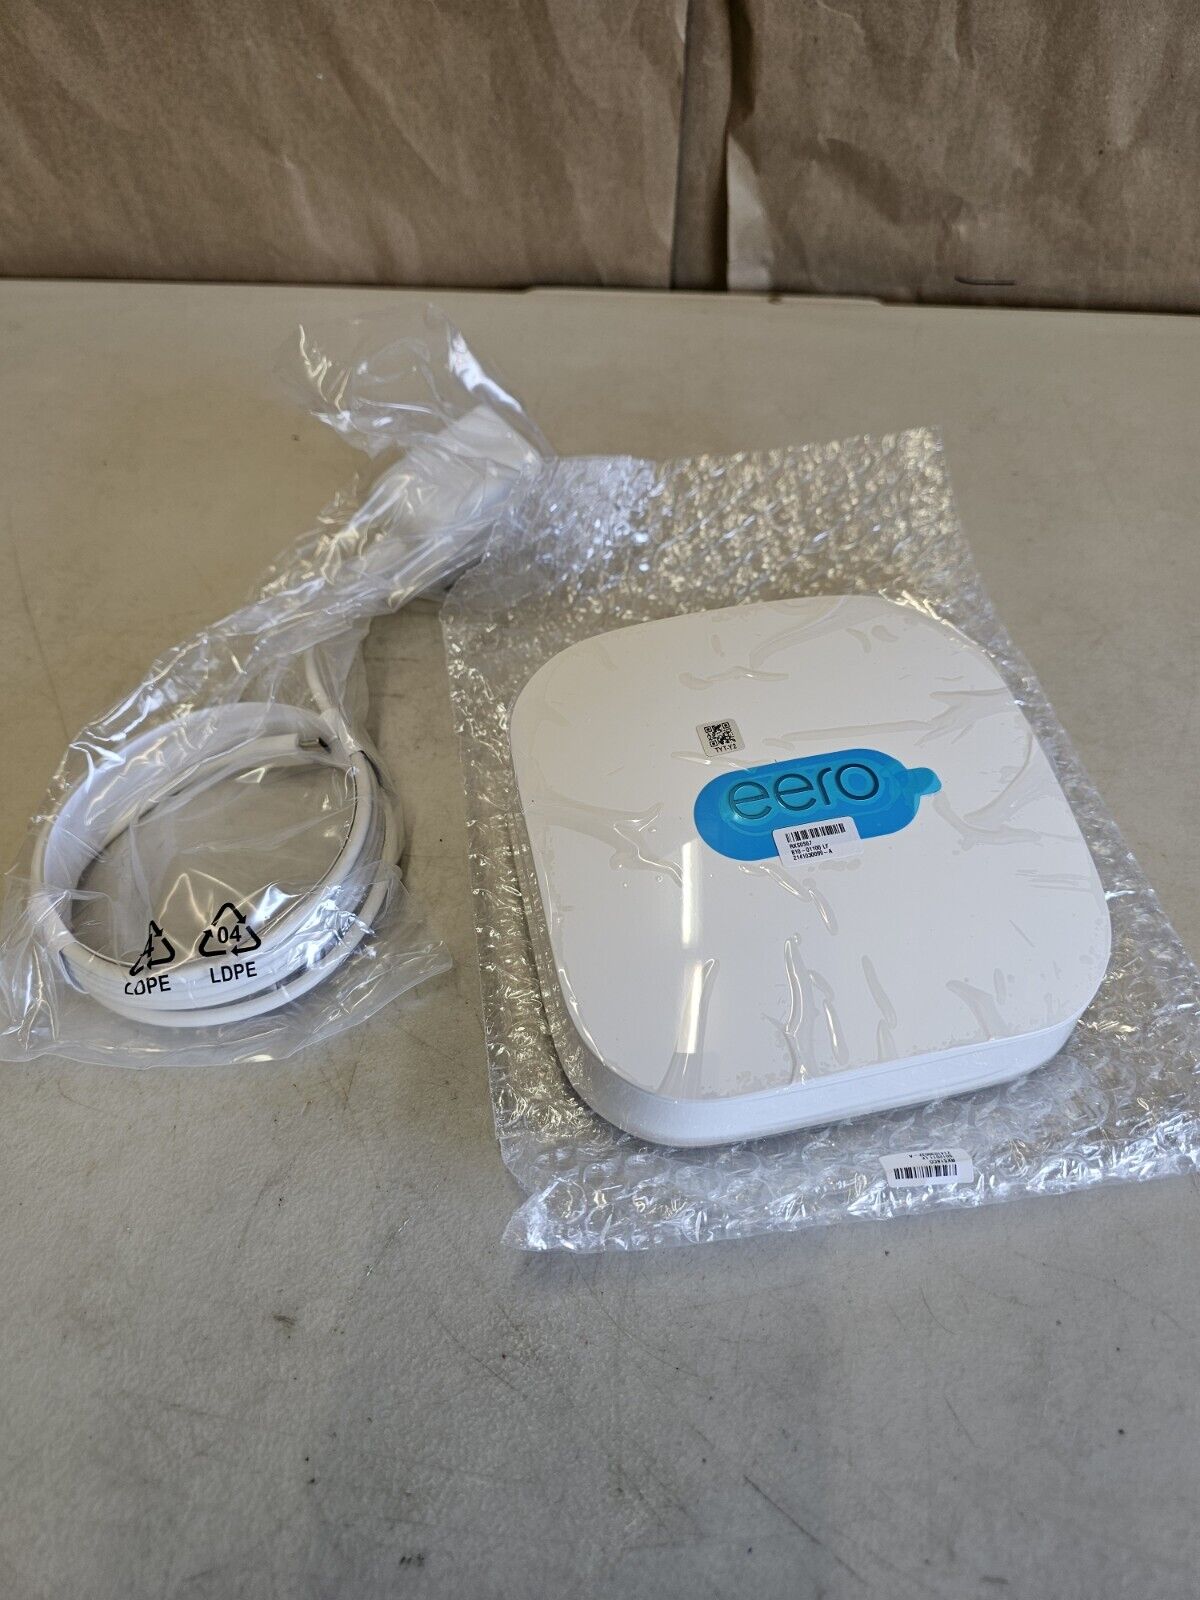 EERO Pro 6E S010001 Wireless Tri-Band Gigabit WiFi 6E Mesh Router New (Open Box)